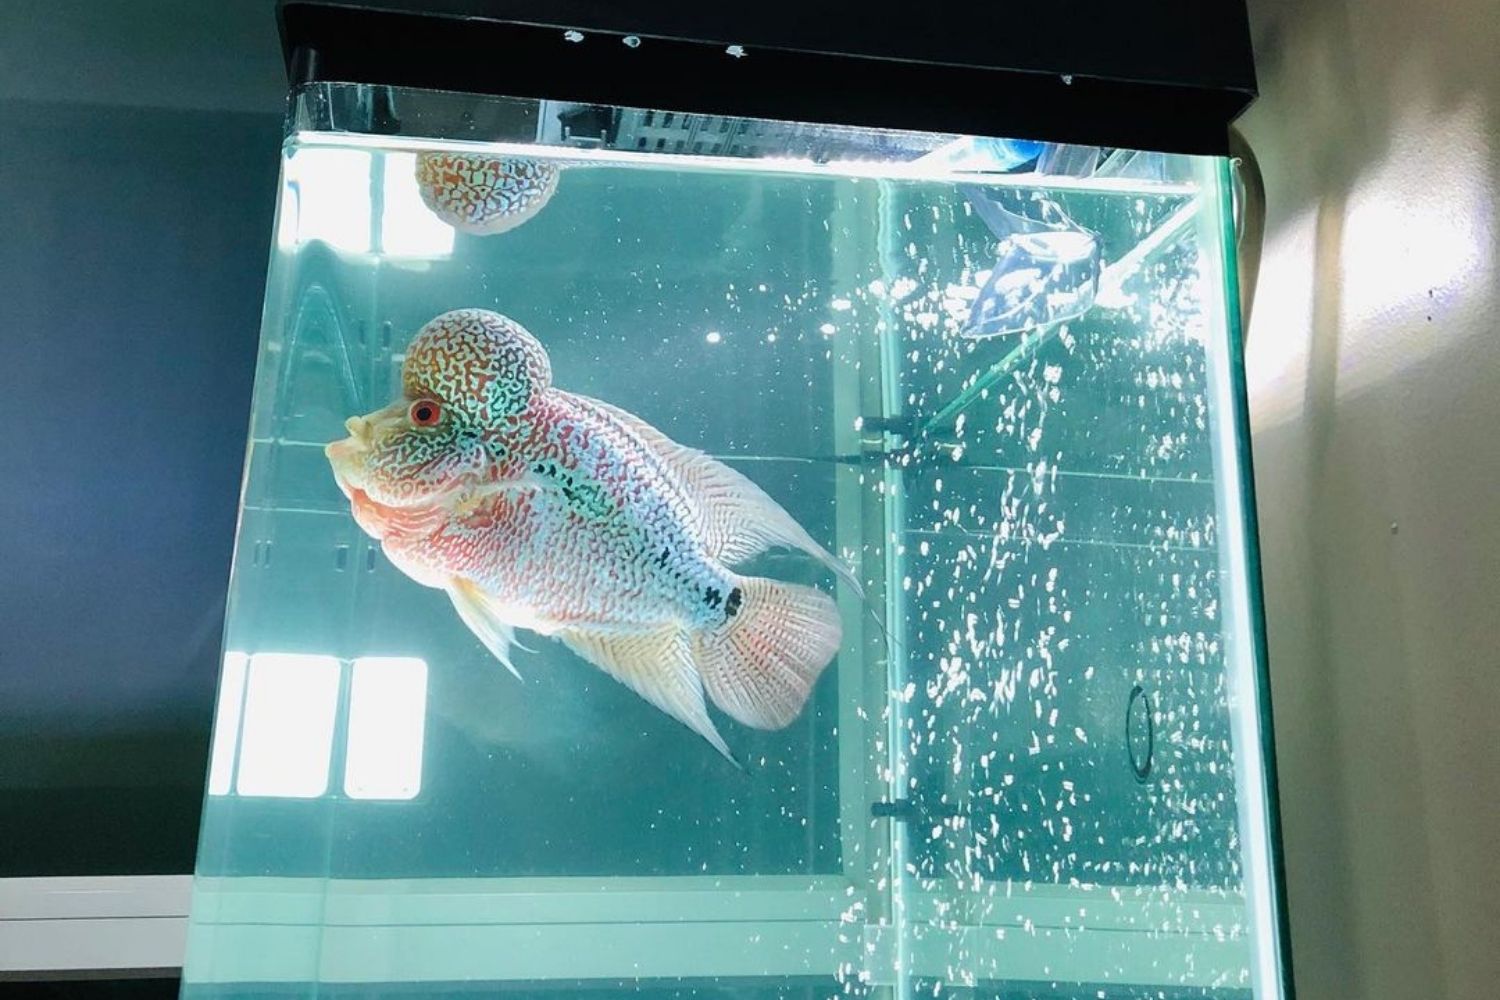 Flowerhorn Cichlid Aquarium Fish